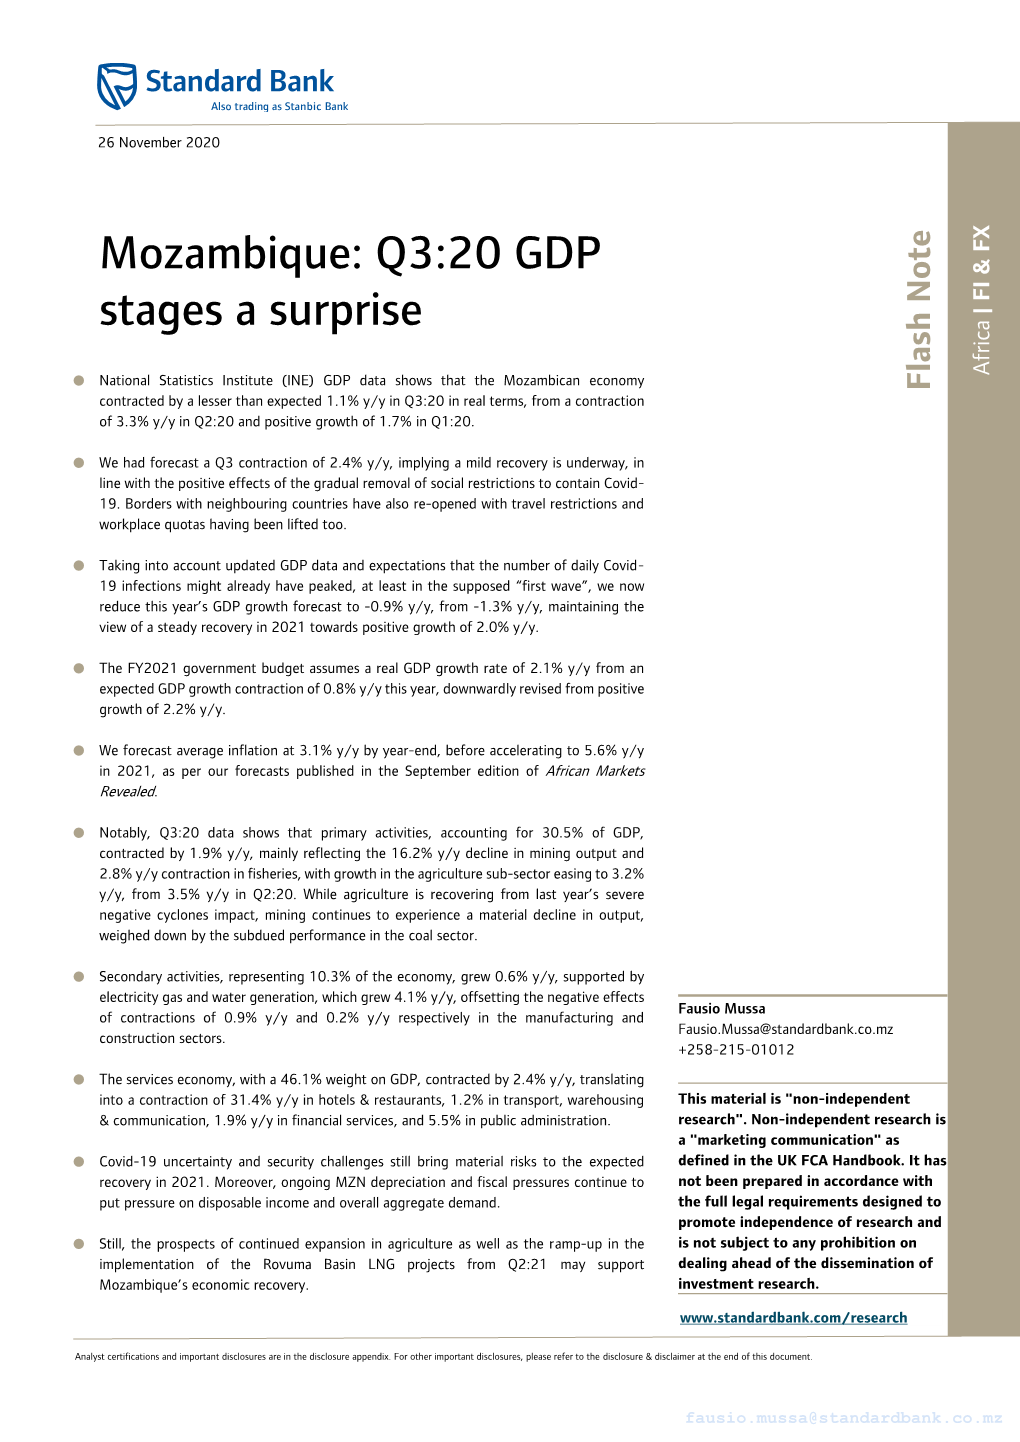 Mozambique: Q3:20 GDP Stages a Surprise